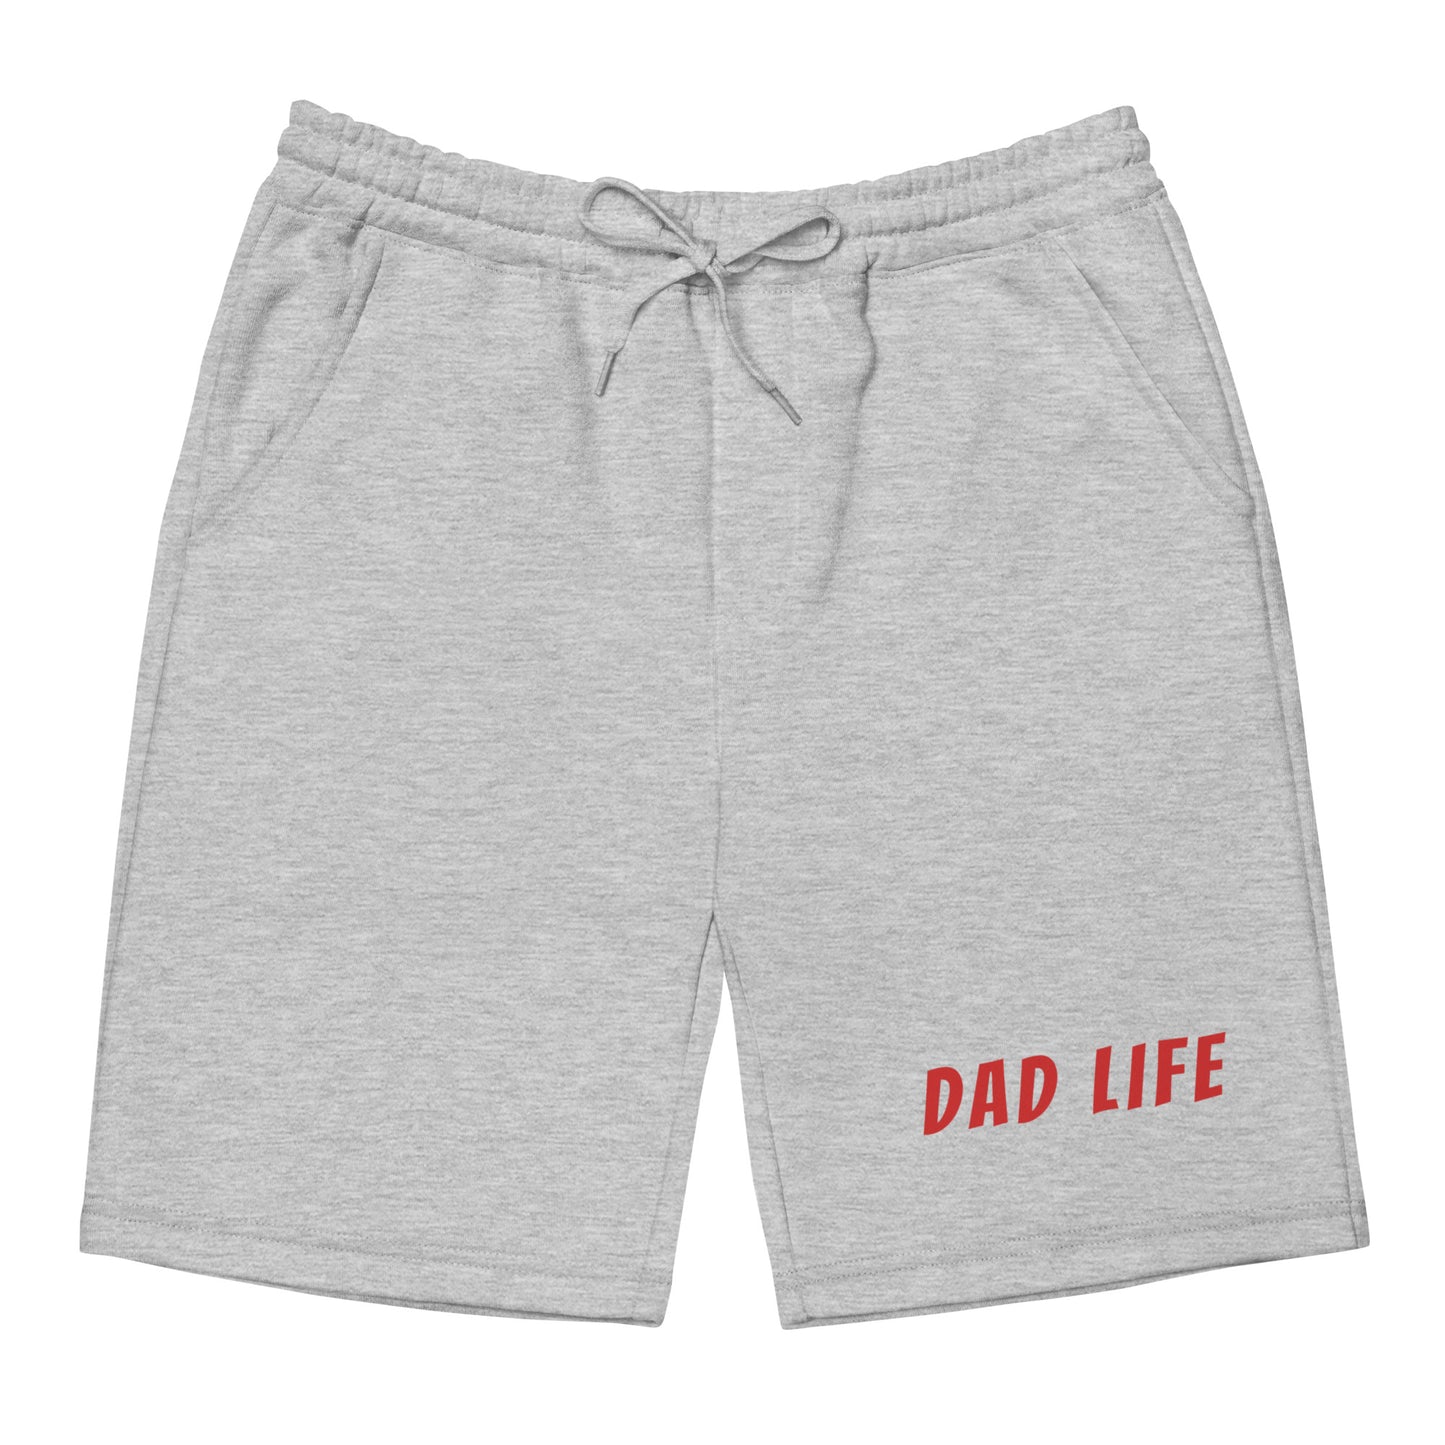 Dad Life fleece shorts